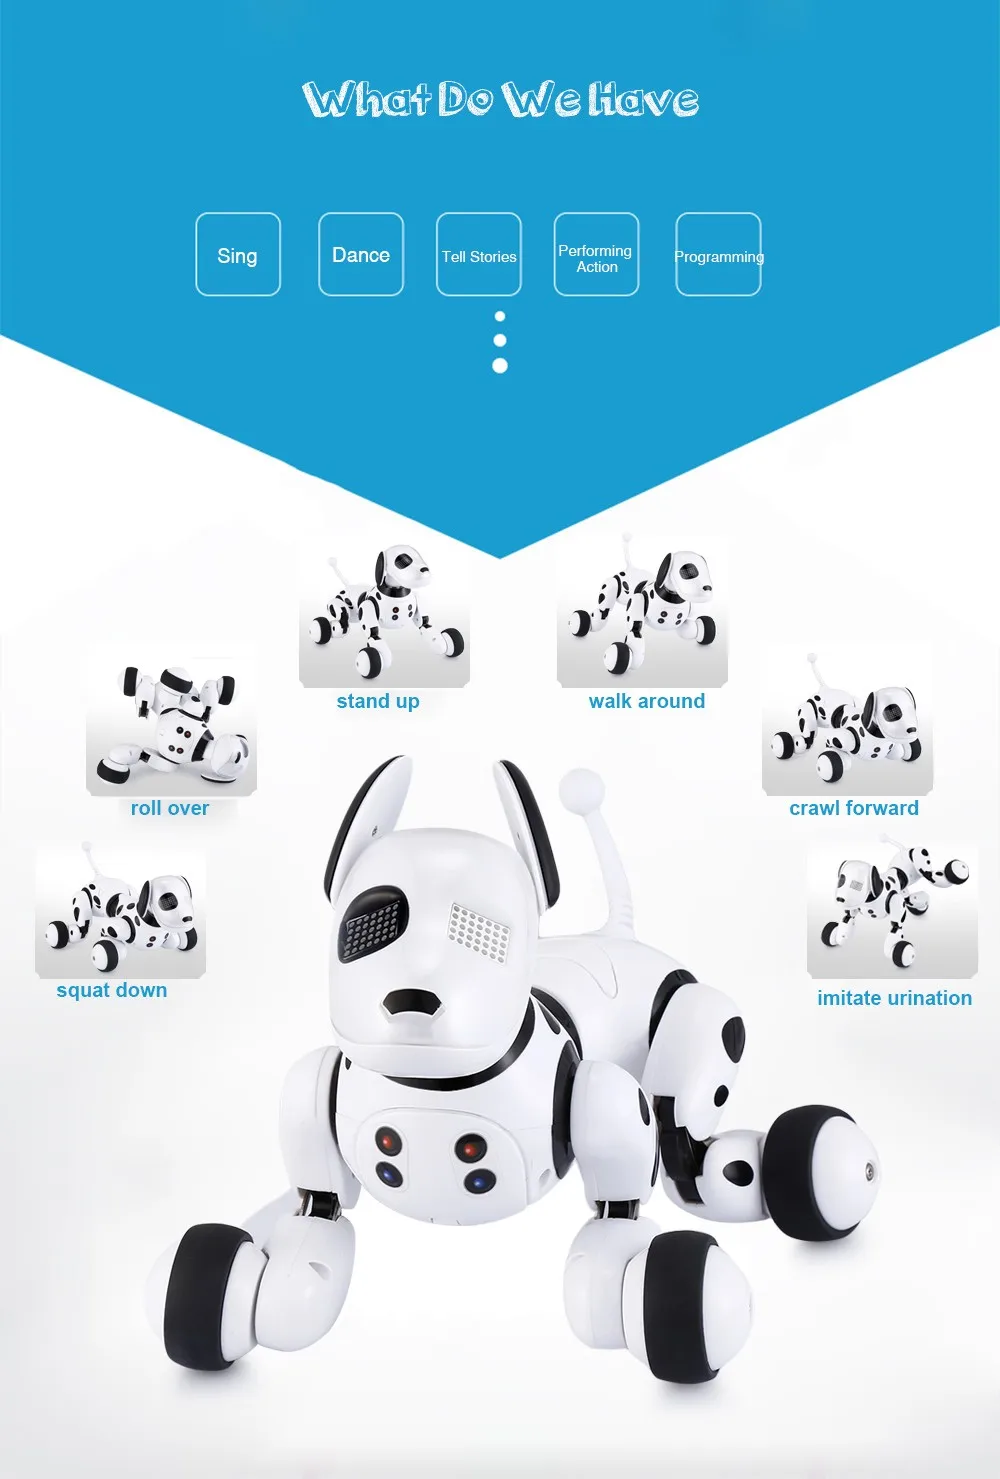 Робот, собака, электронный питомец, умный робот, игрушка 2,4G, умный беспроводной говорящий пульт дистанционного управления, детский подарок на день рождения